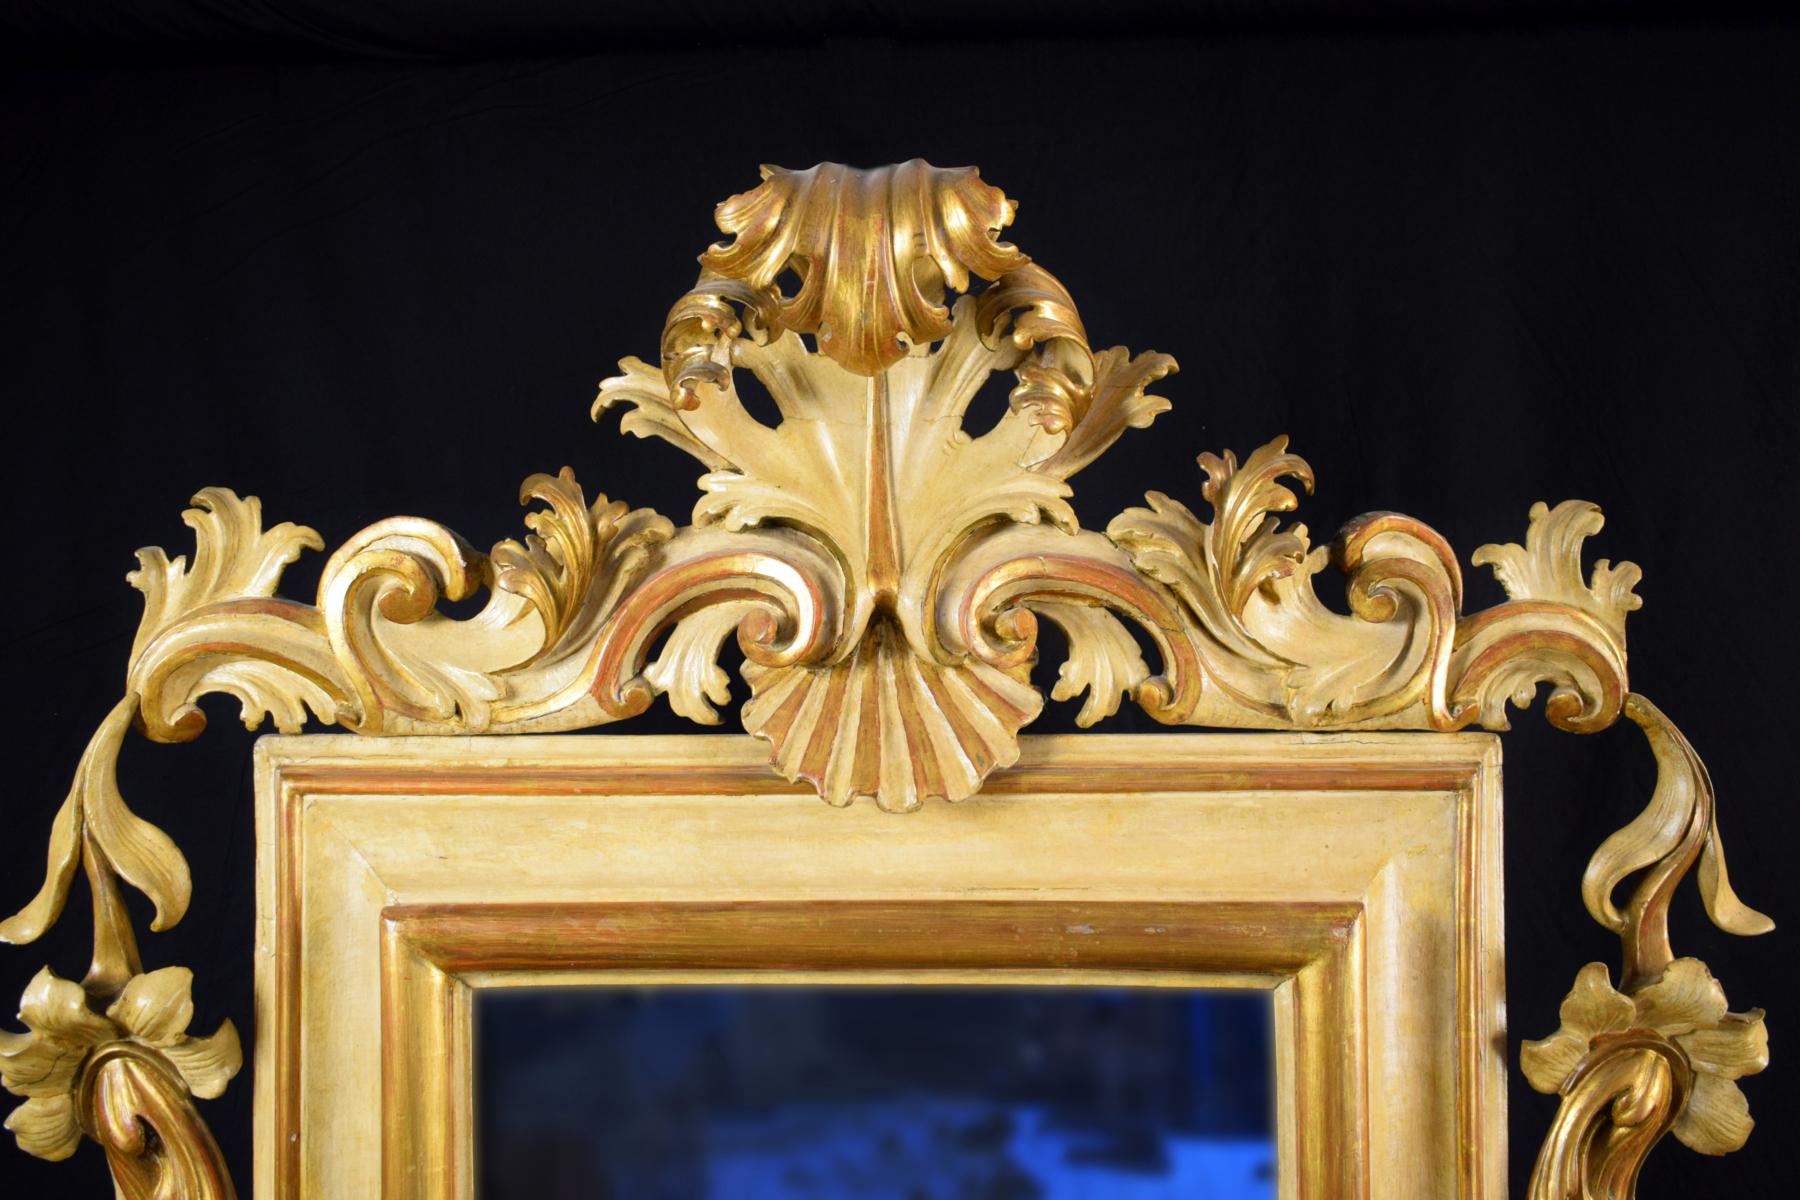 xVIIIe siècle, grand miroir italien en bois laqué et doré à motifs de rocaille

Ce grand miroir en bois finement sculpté, doré et laqué, a été fabriqué dans le nord de l'Italie (région vénitienne) au début du XVIIIe siècle.
Il présente un cadre